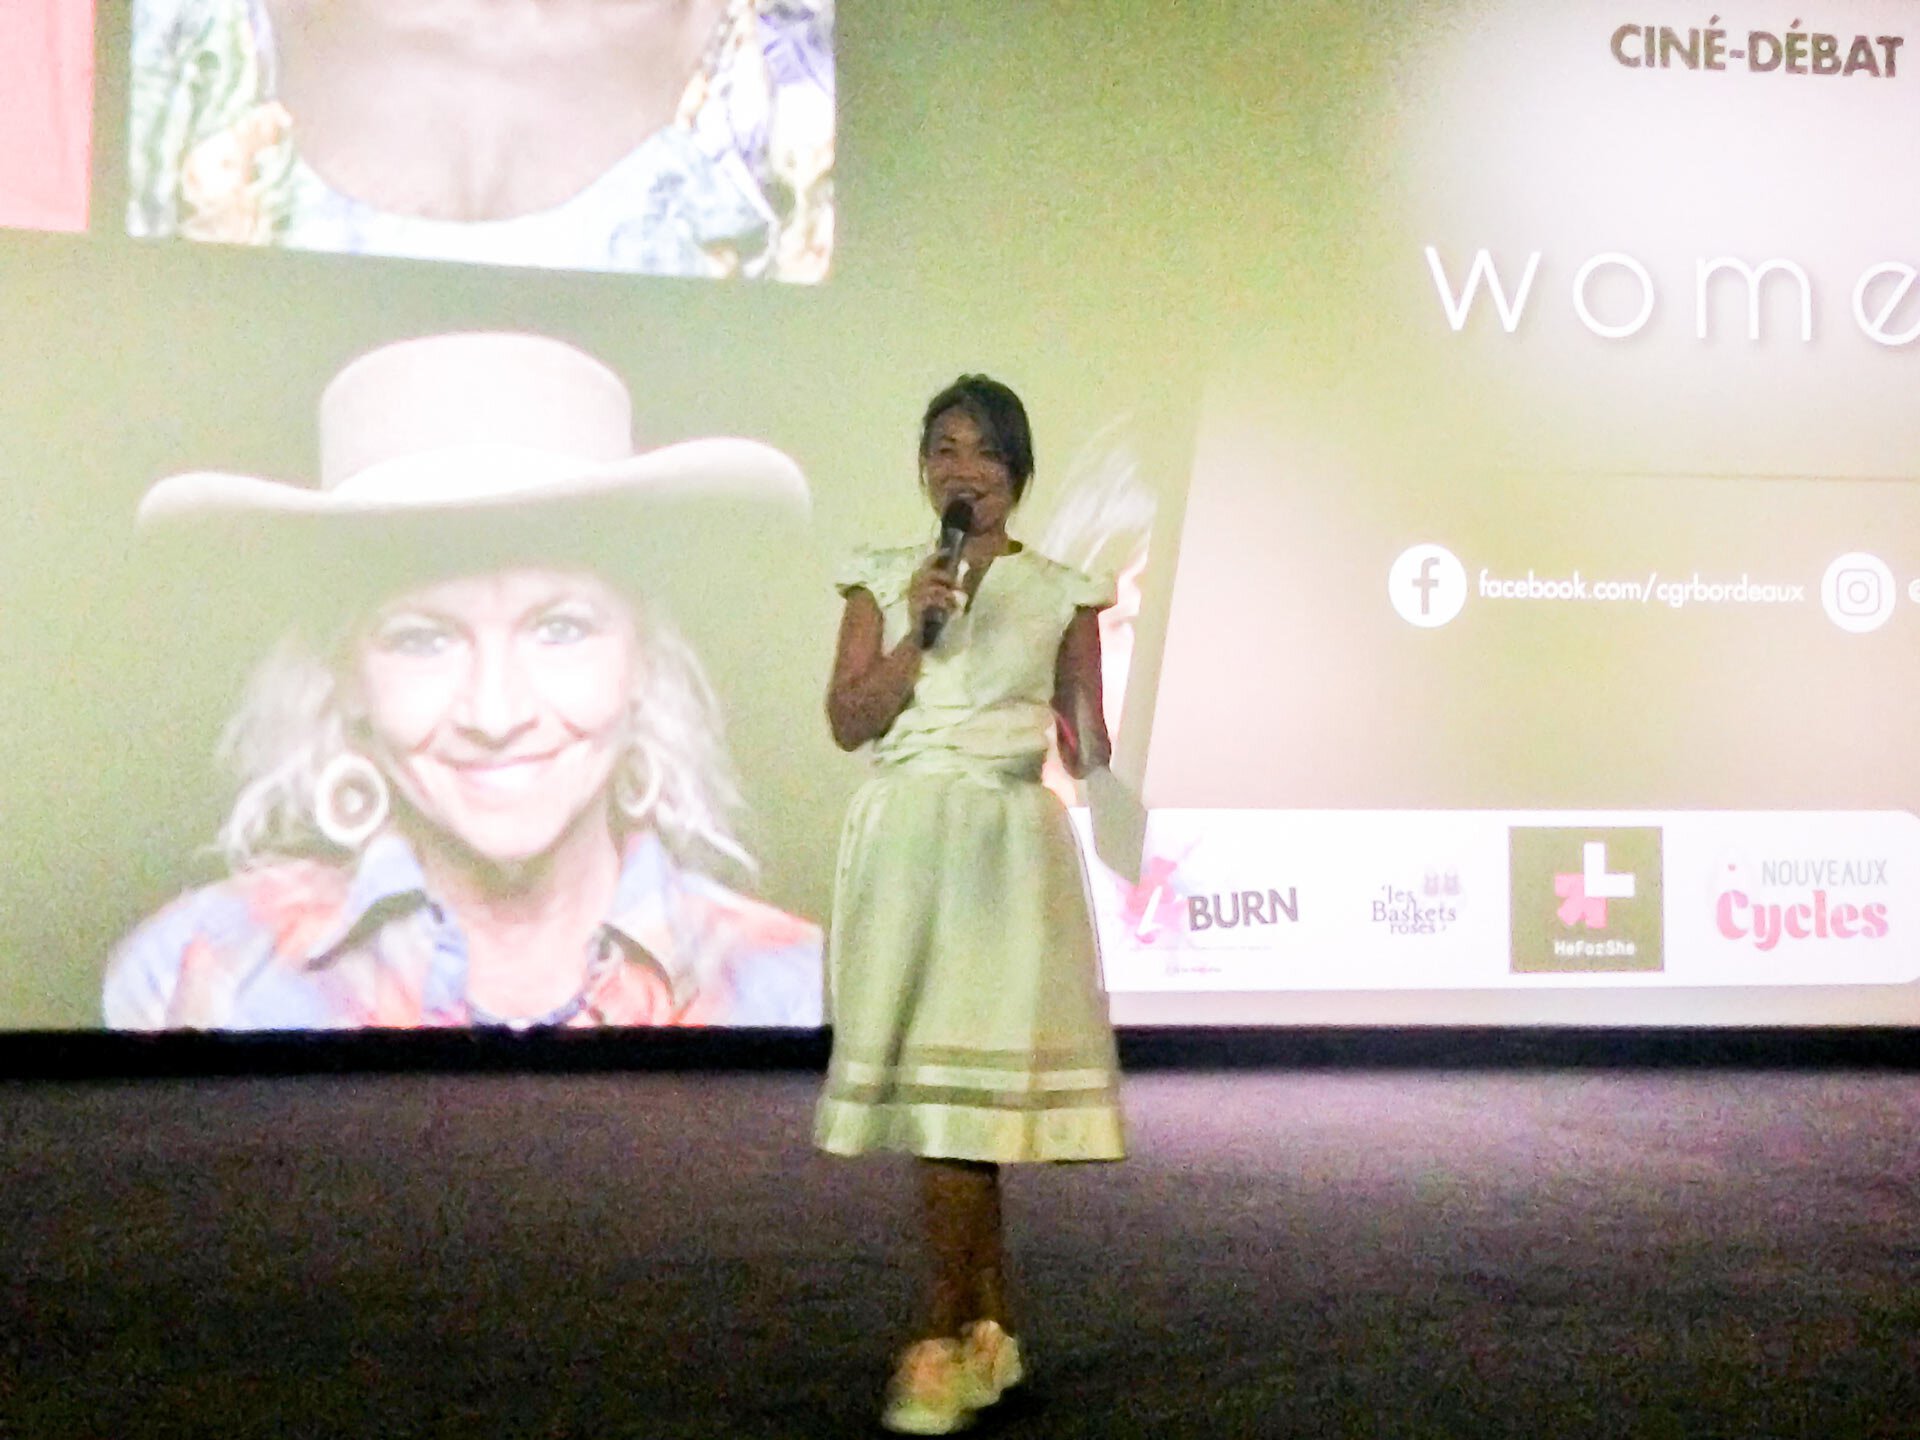 La fondatrice de Baskets Roses, Murielle Nguyen, devant l'écran qui diffusait le film "Woman", évoque les injustices subit par les femmes.